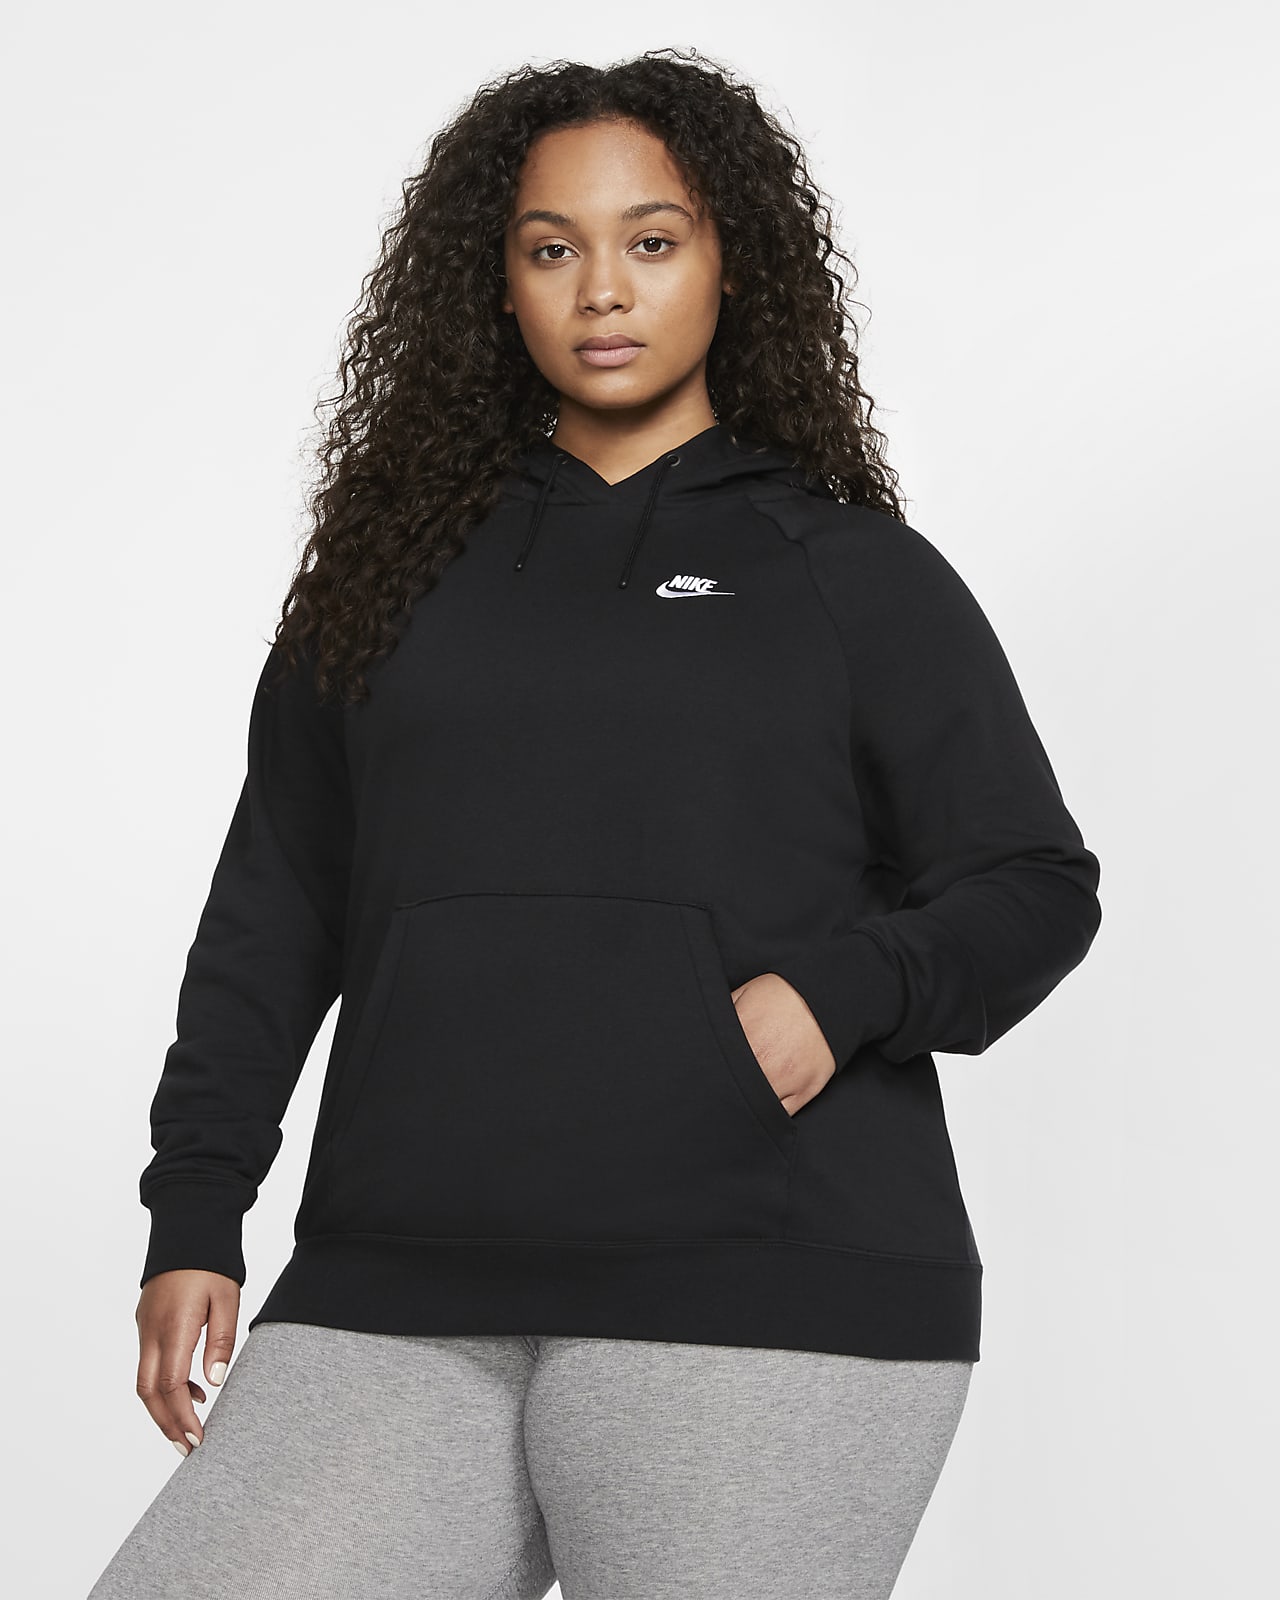 Nike Sportswear Essential Women's Fleece Pullover Hoodie (Plus Nike .com